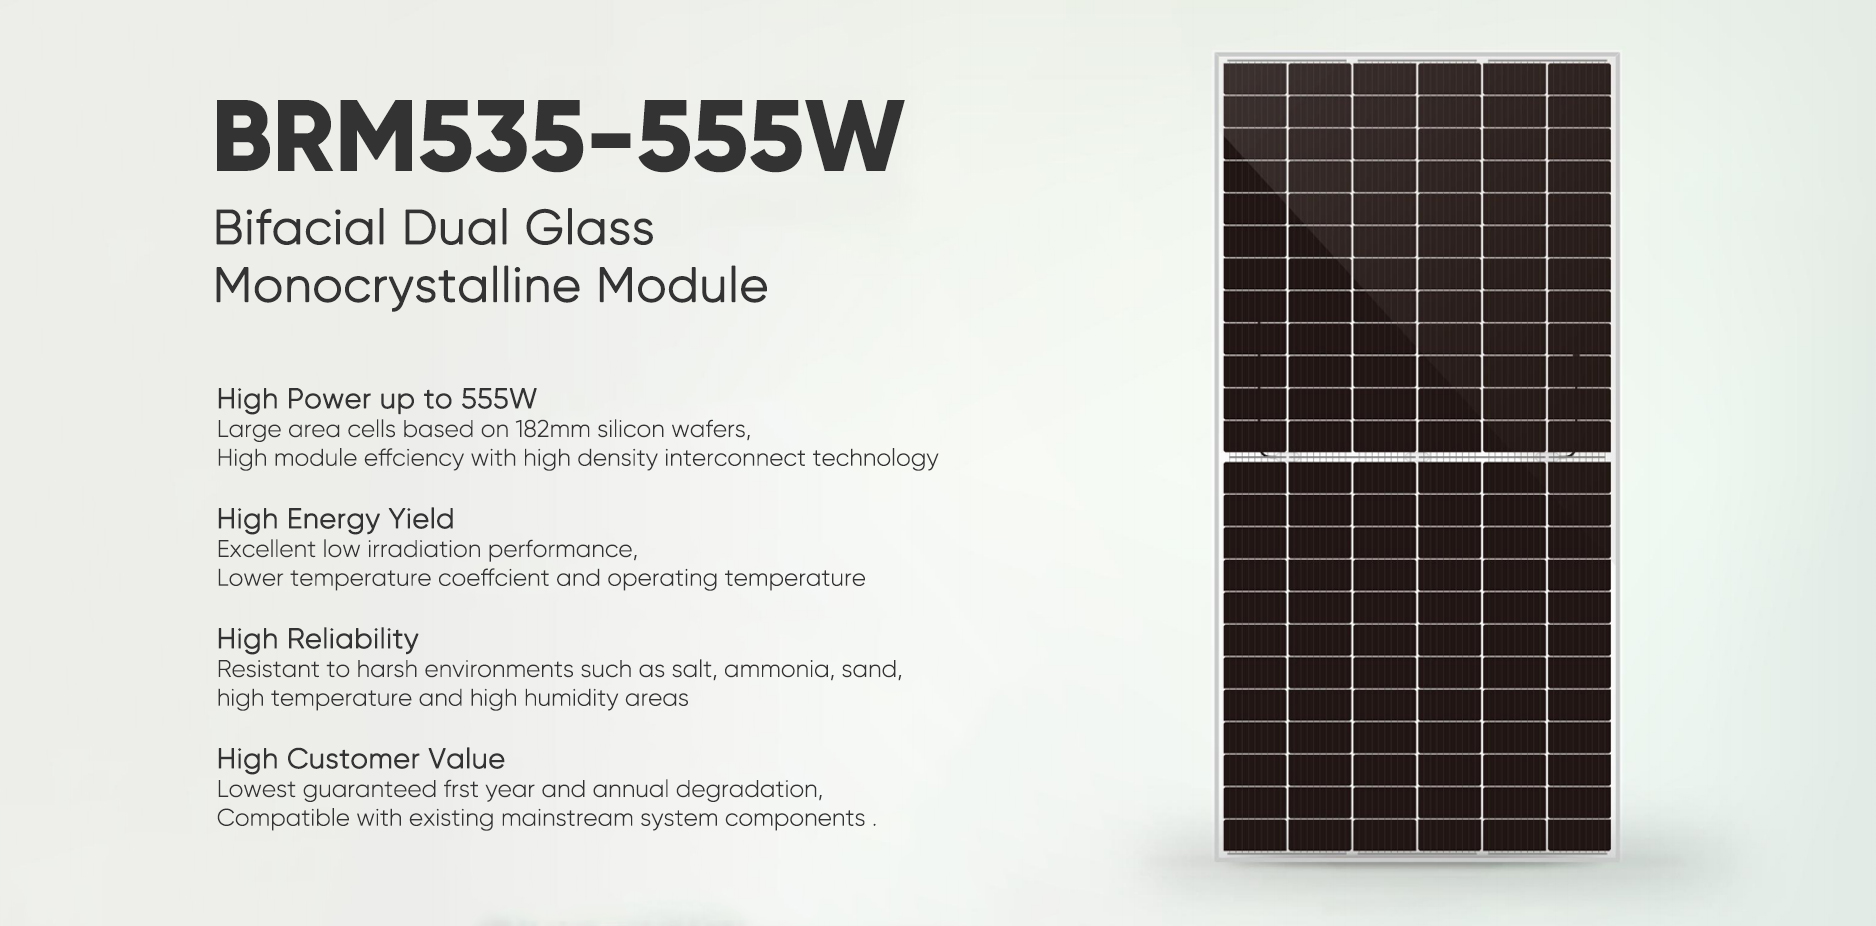 Postair-535W-555W Solar Panel Bifacial Dual Glass Modal Monocrystalline